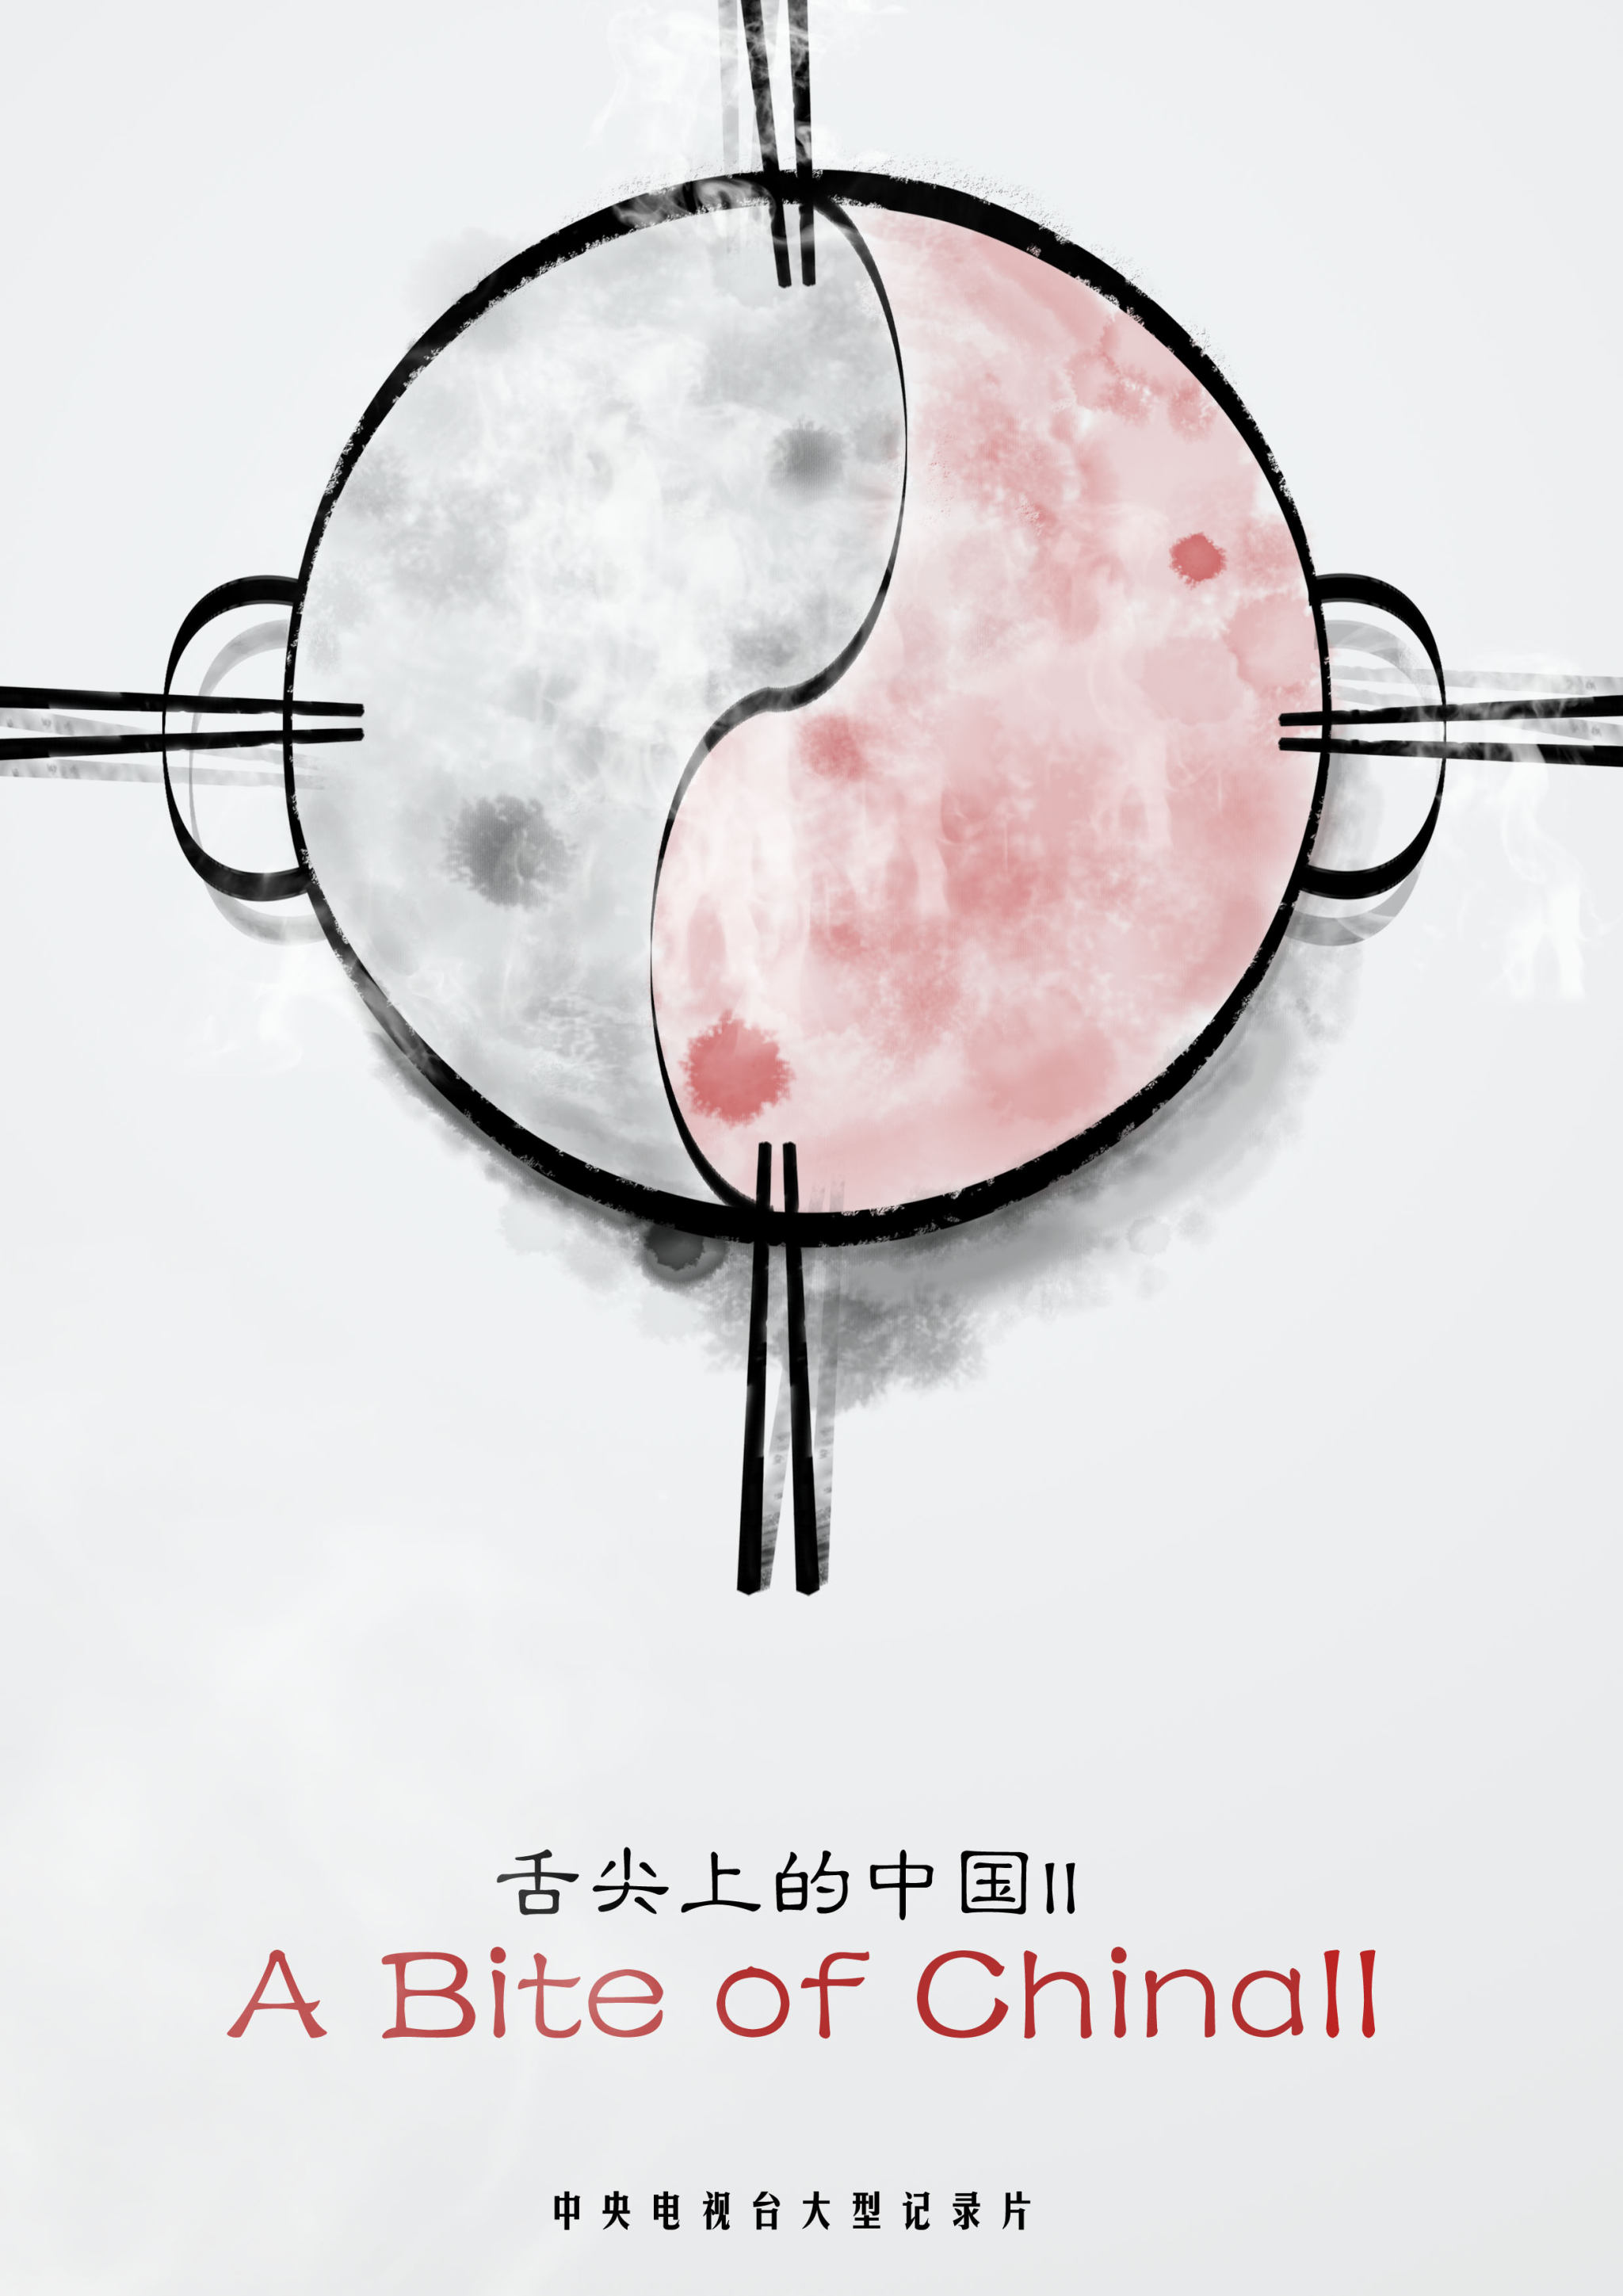 此海报主表体现的是中国美食与中国文化的关系,火锅的太极图形,表现了